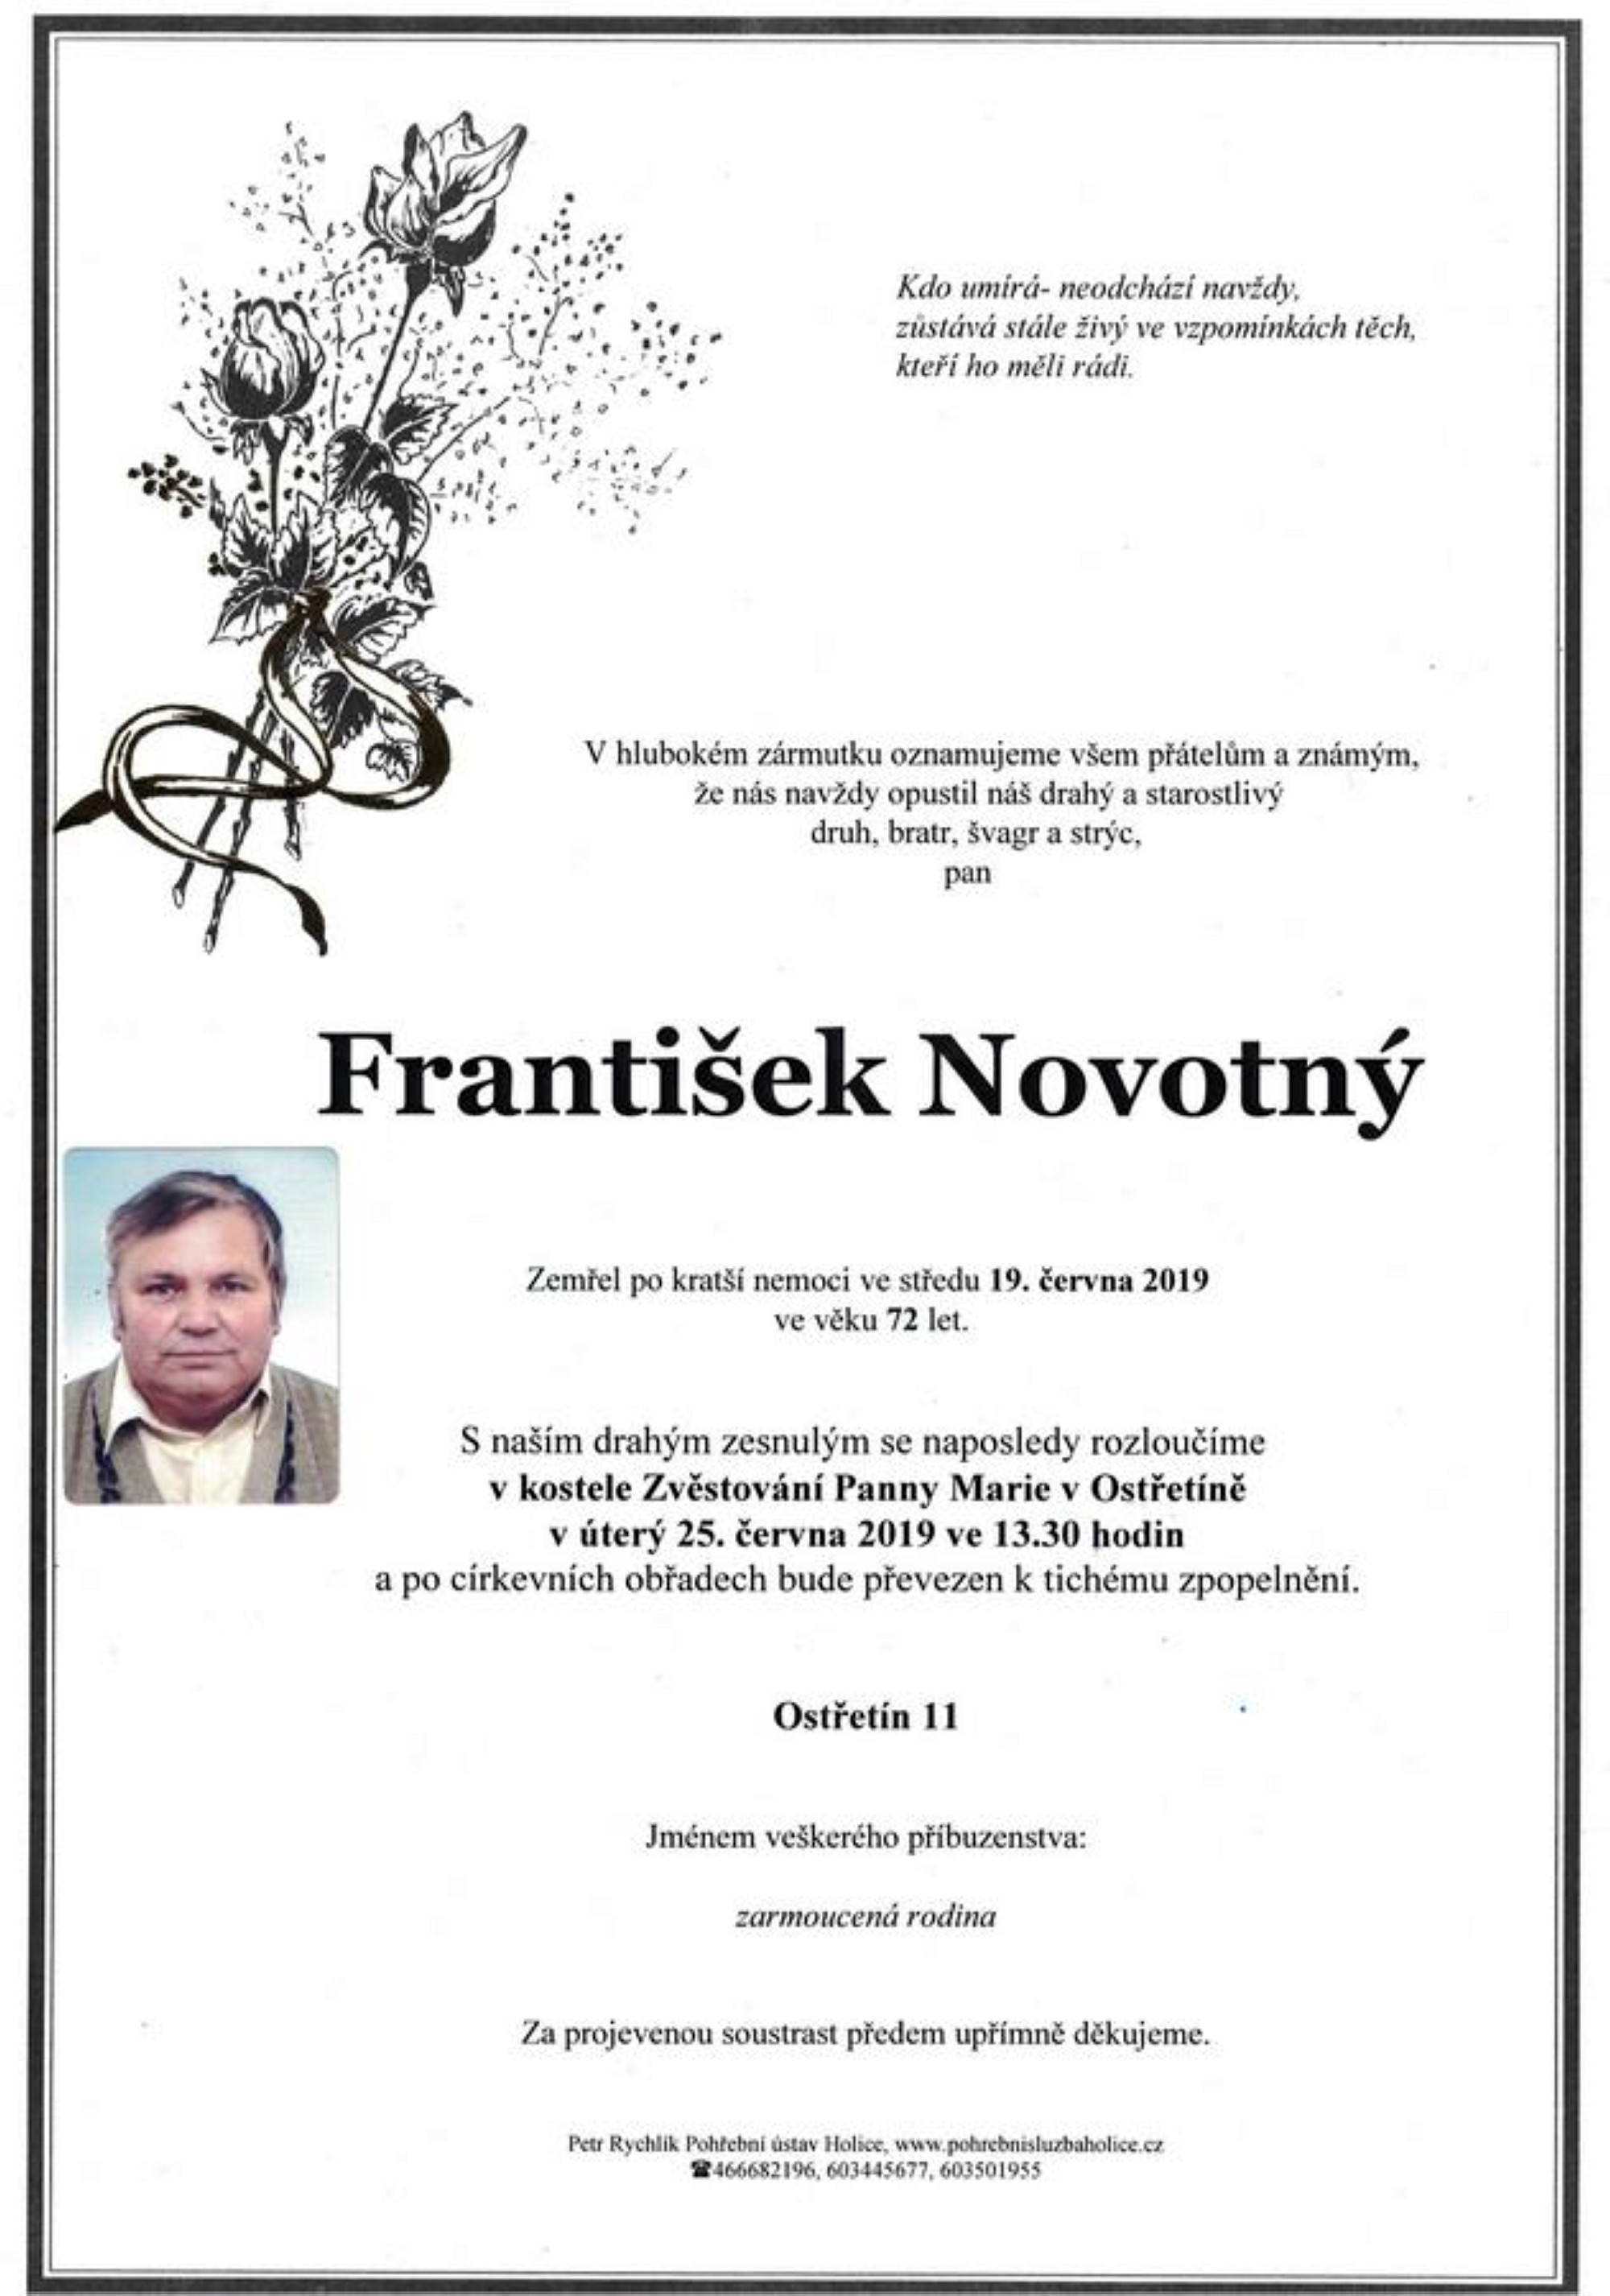 František Novotný